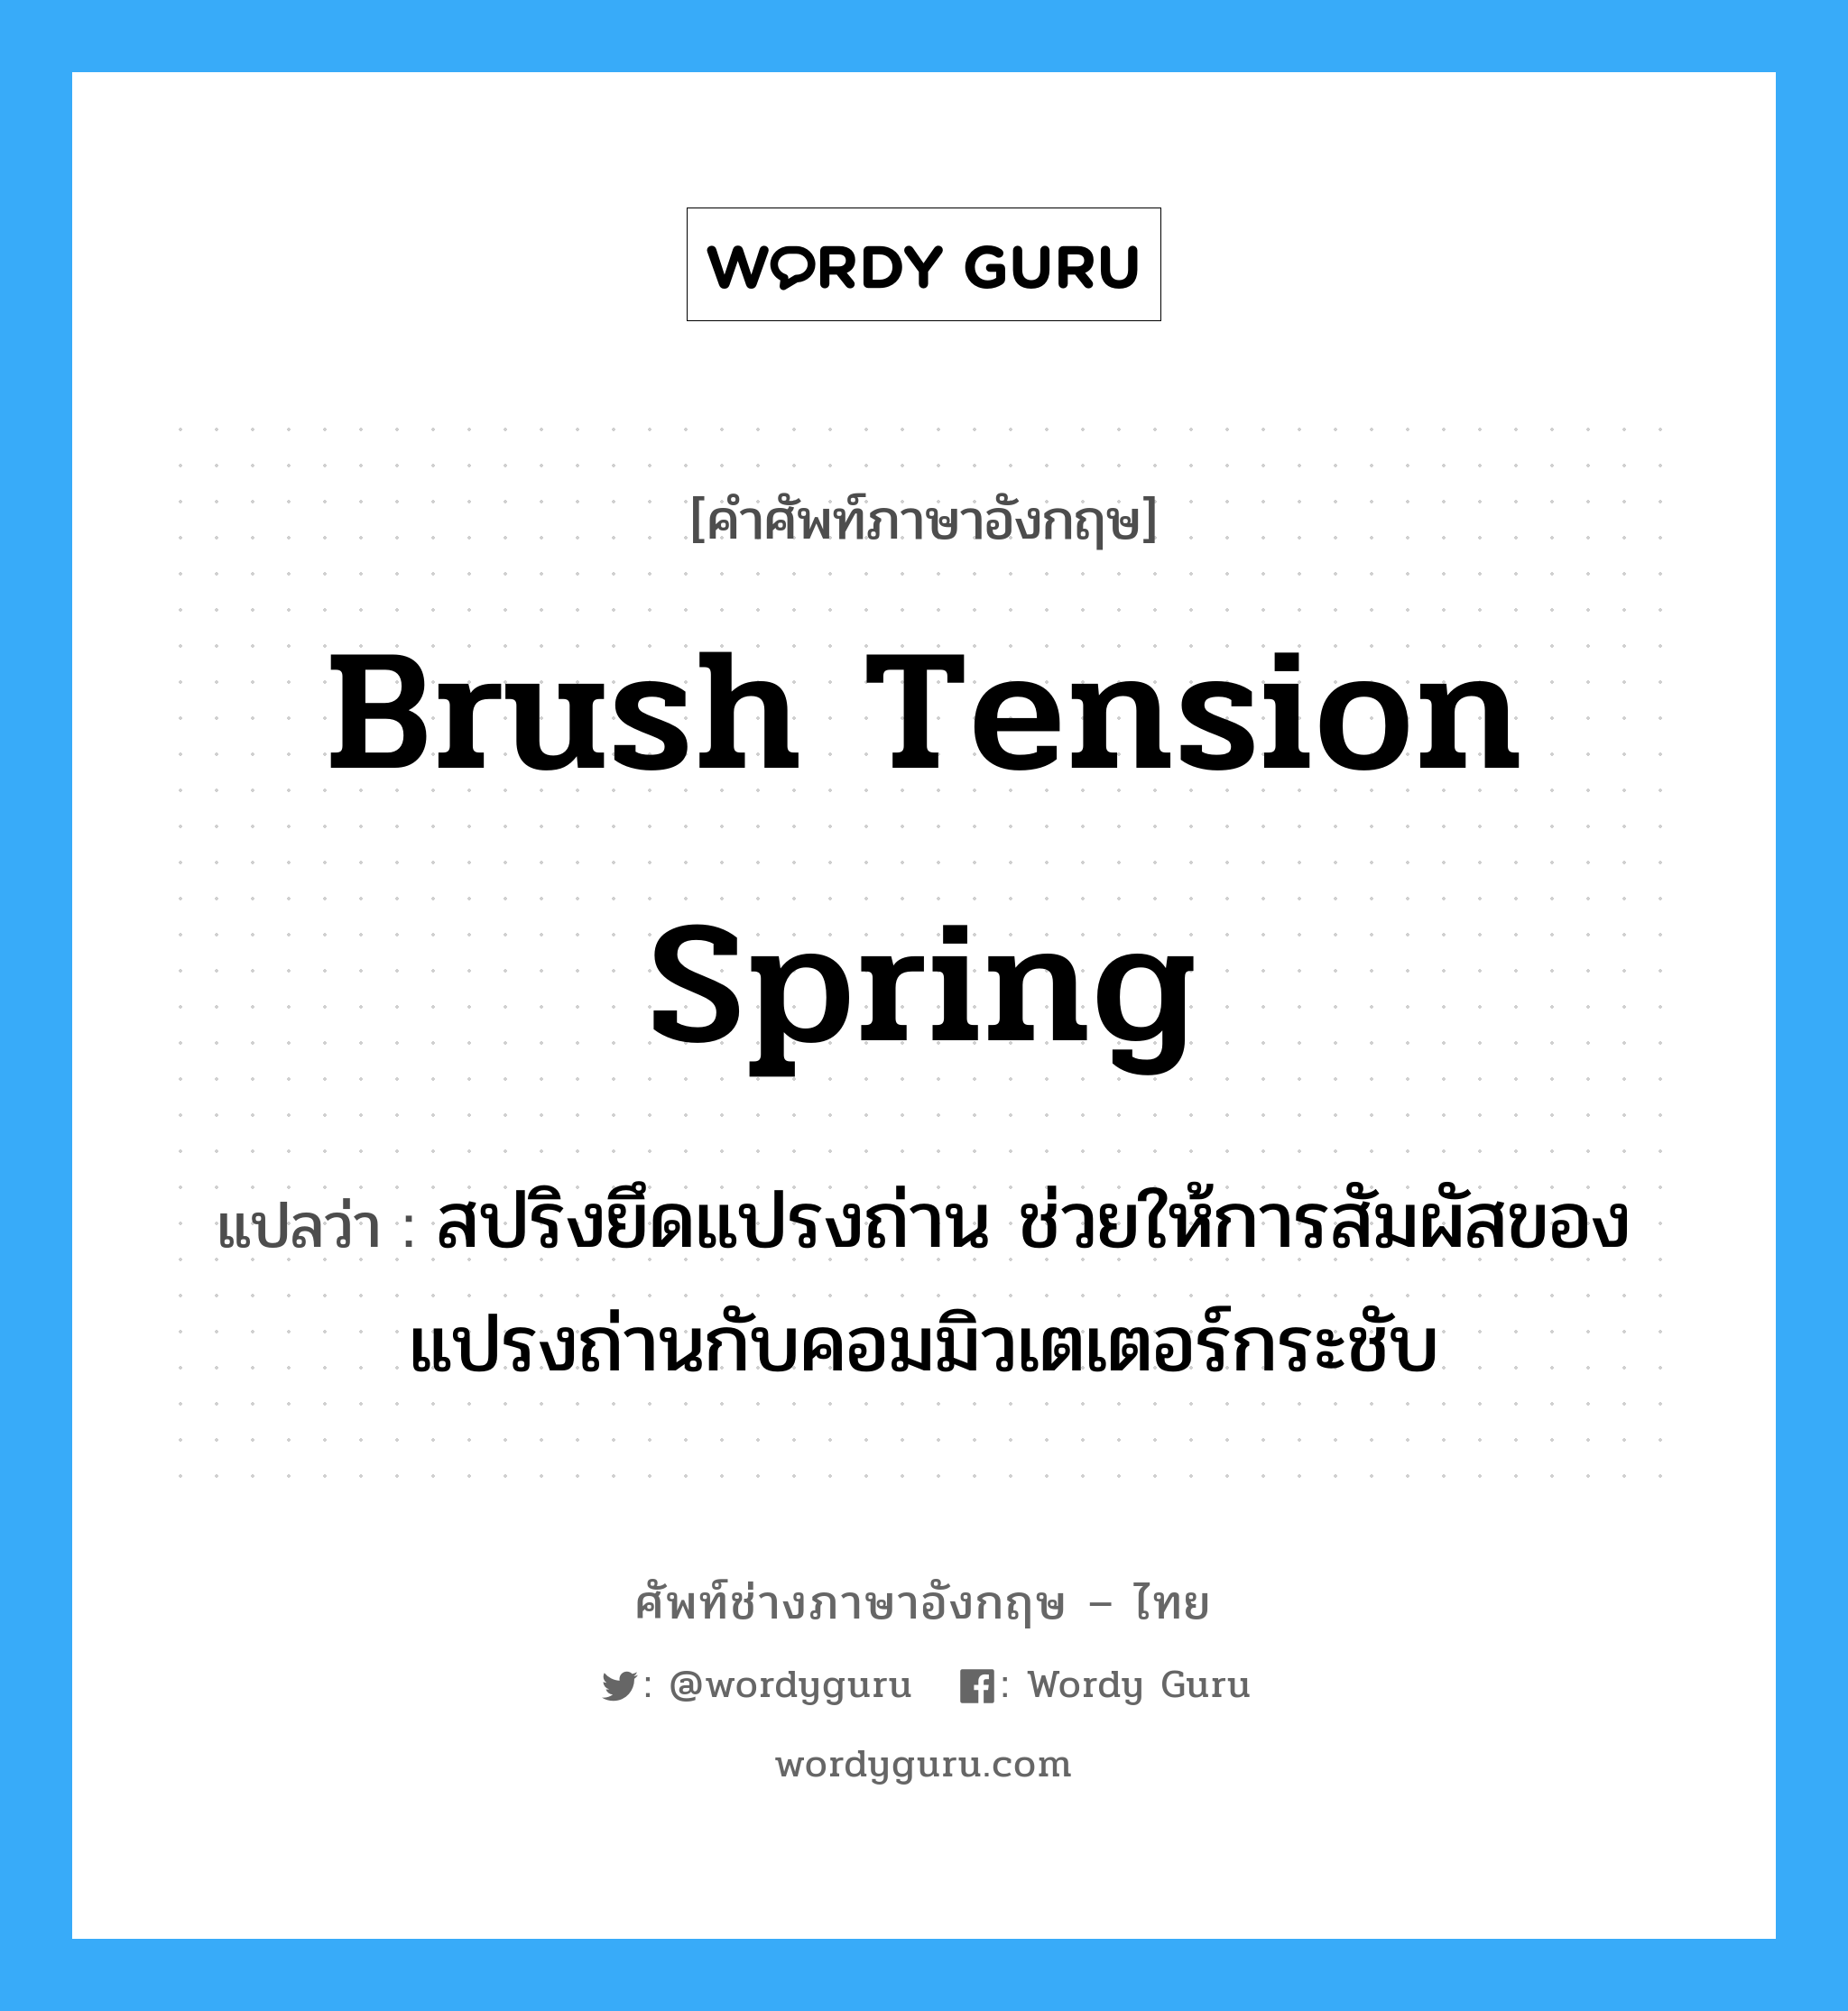 brush tension spring แปลว่า?, คำศัพท์ช่างภาษาอังกฤษ - ไทย brush tension spring คำศัพท์ภาษาอังกฤษ brush tension spring แปลว่า สปริงยึดแปรงถ่าน ช่วยให้การสัมผัสของแปรงถ่านกับคอมมิวเตเตอร์กระชับ